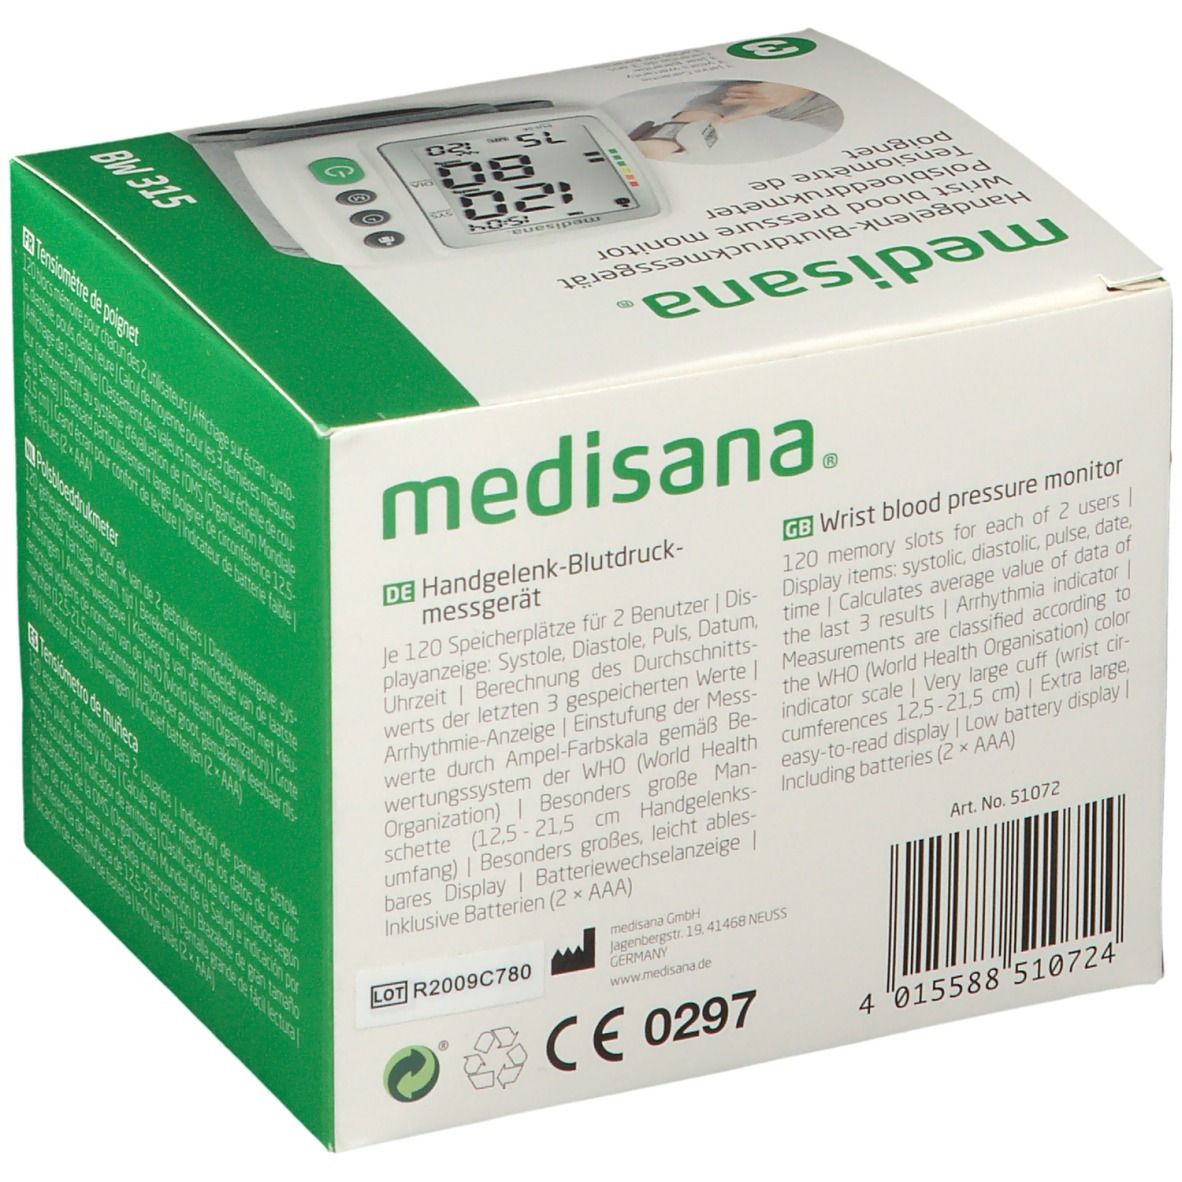 315 1 Medisana Handgelenk-Blutdruckmessgerät St BW